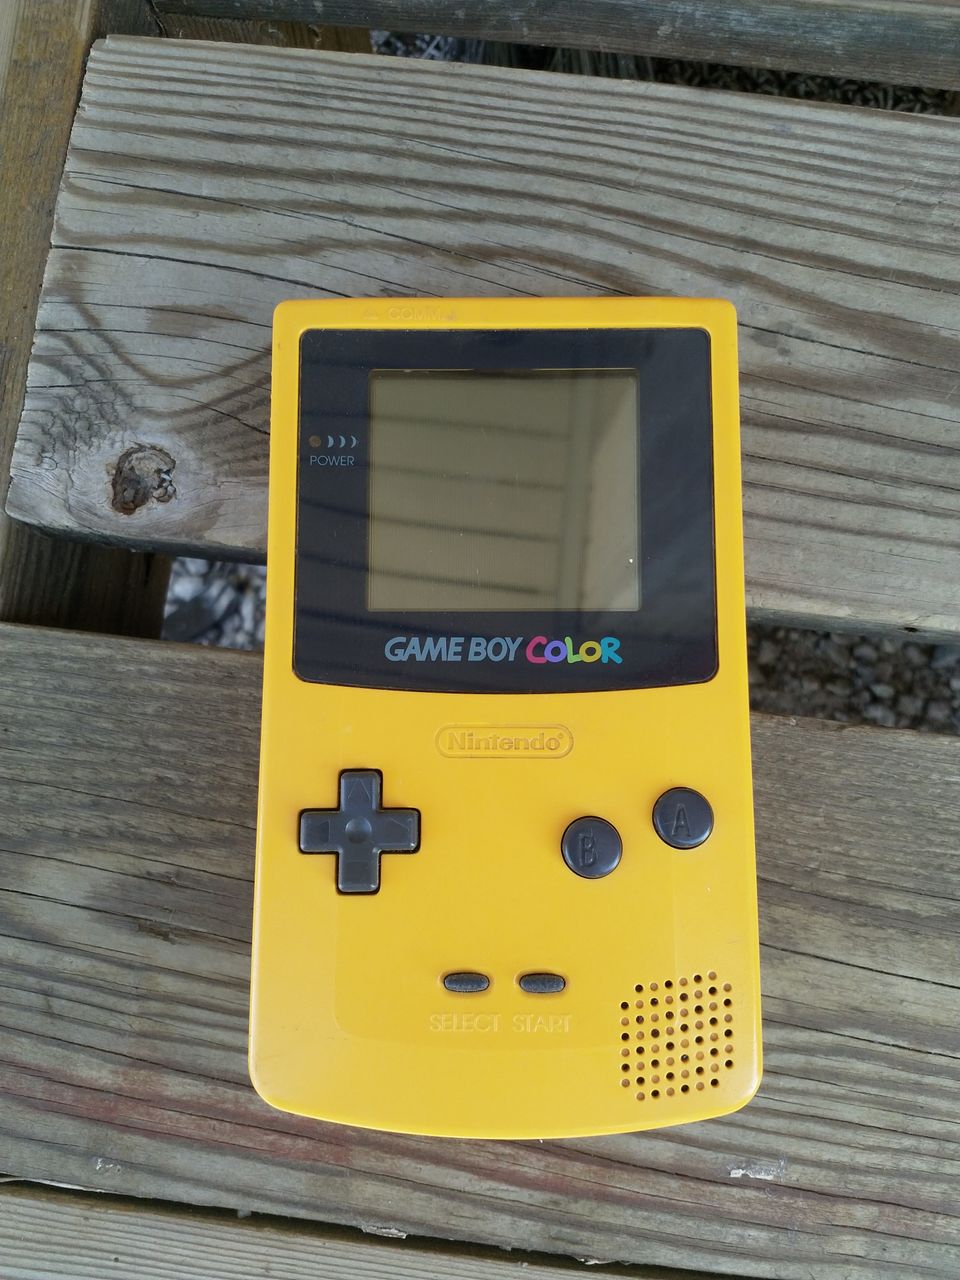 GameBoy Color keltainen + GTA-peli